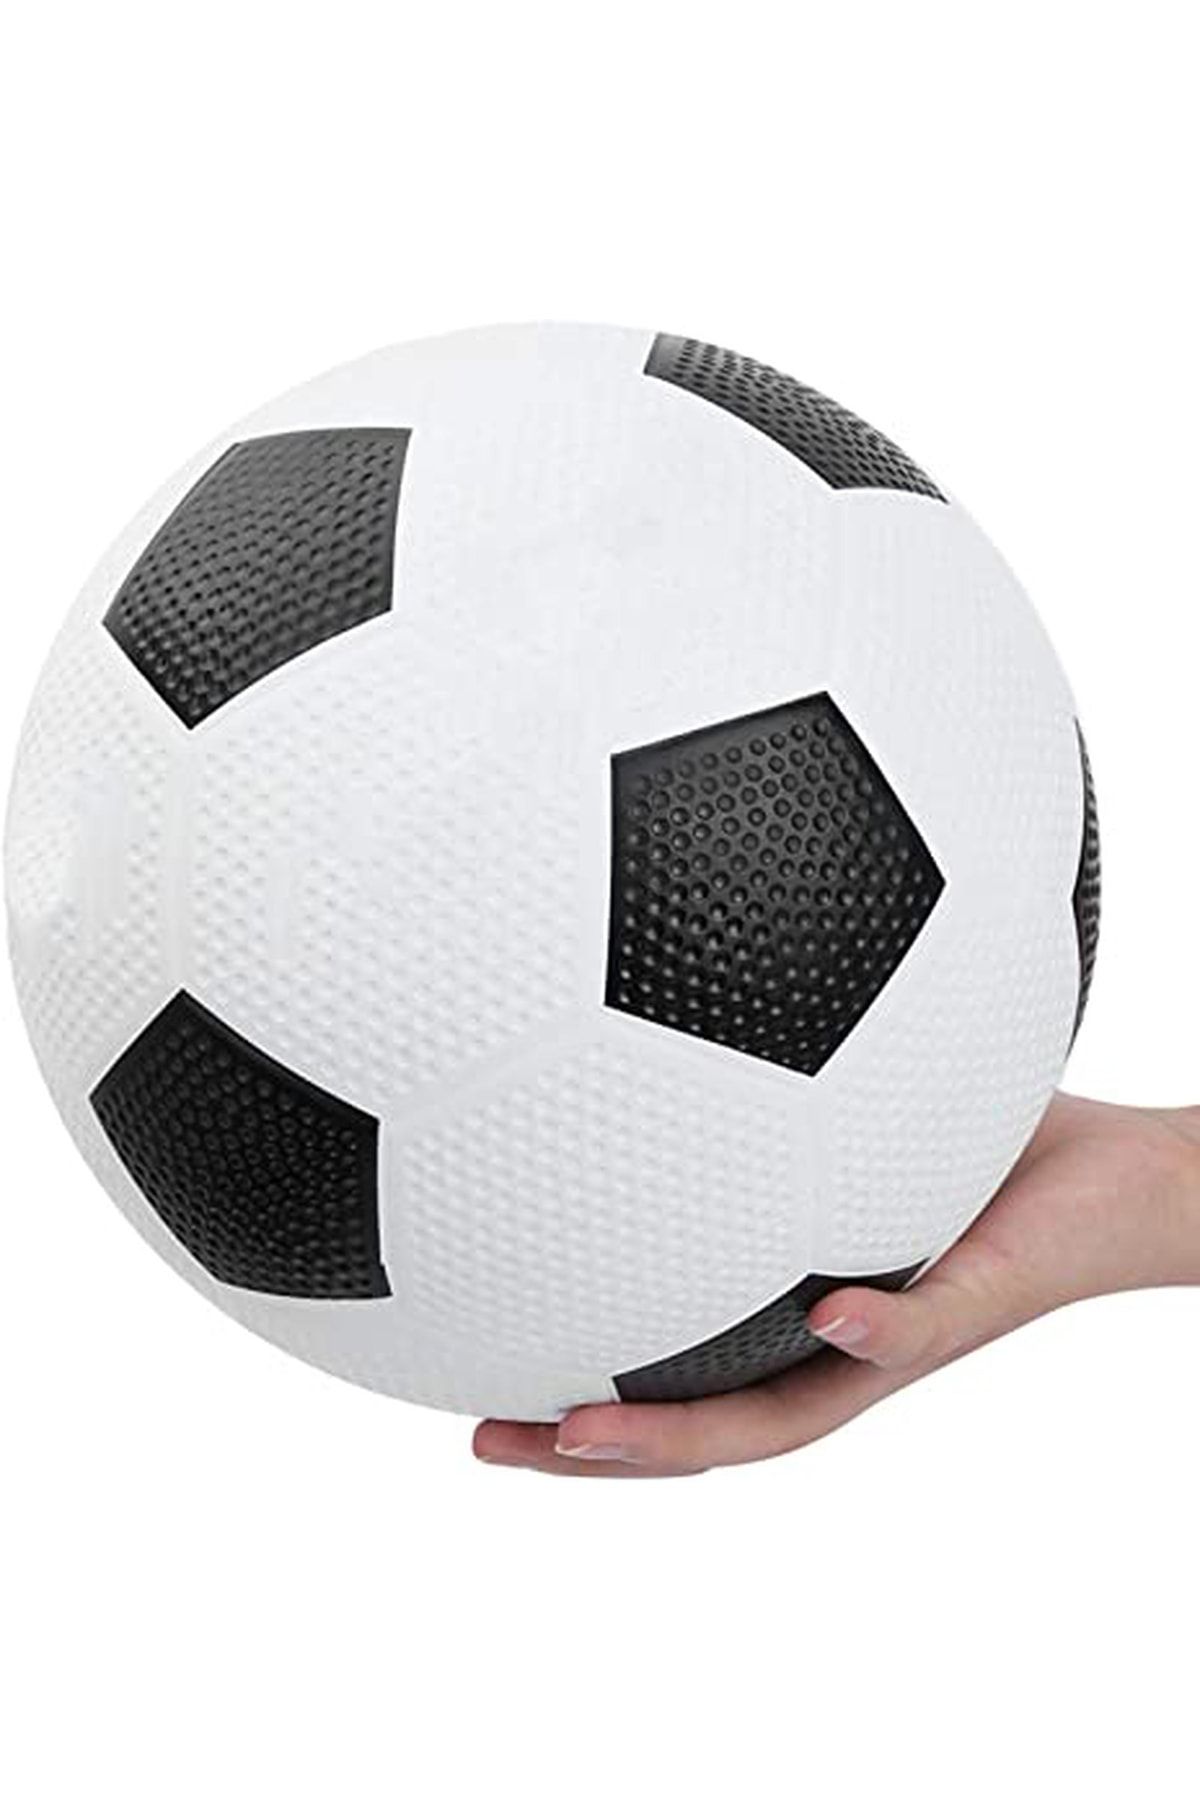 Janva Kauçuk Futbol Topu Dikişsiz Tırtıklı